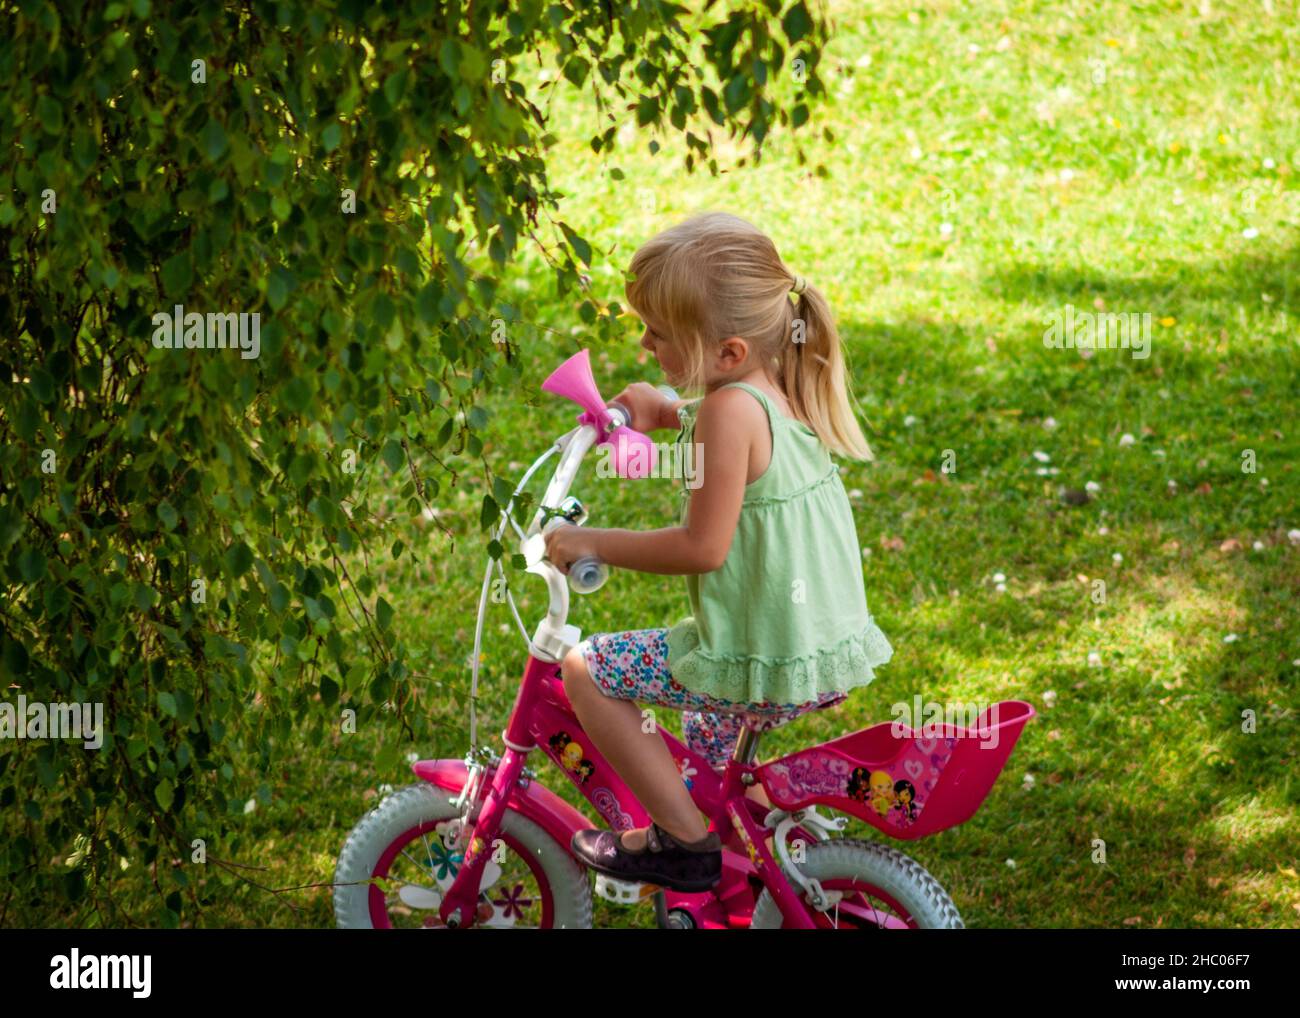 Kleines Mädchen Reiten 12 Zoll rosa Mädchen Pedal Fahrrad mit Trainingsrädern im offenen Schatten auf grünen Wiese Hinterhof Stockfoto